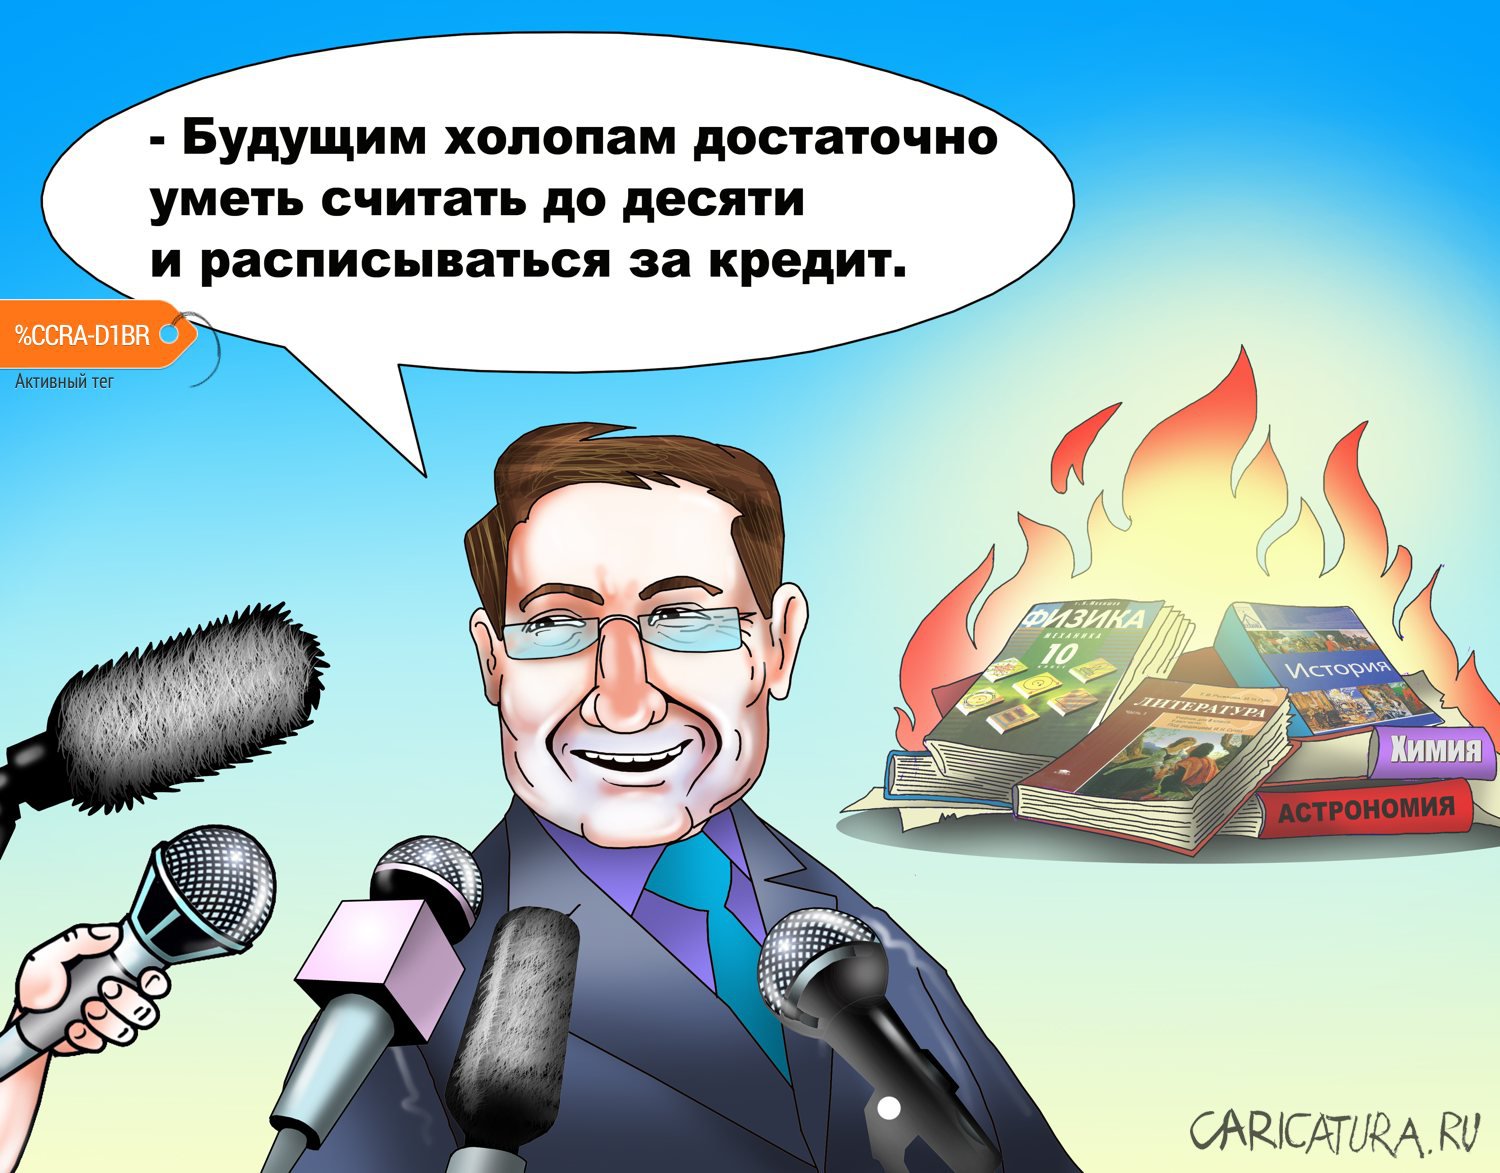 Карикатура "Цель - убить экзамены", Сергей Корсун